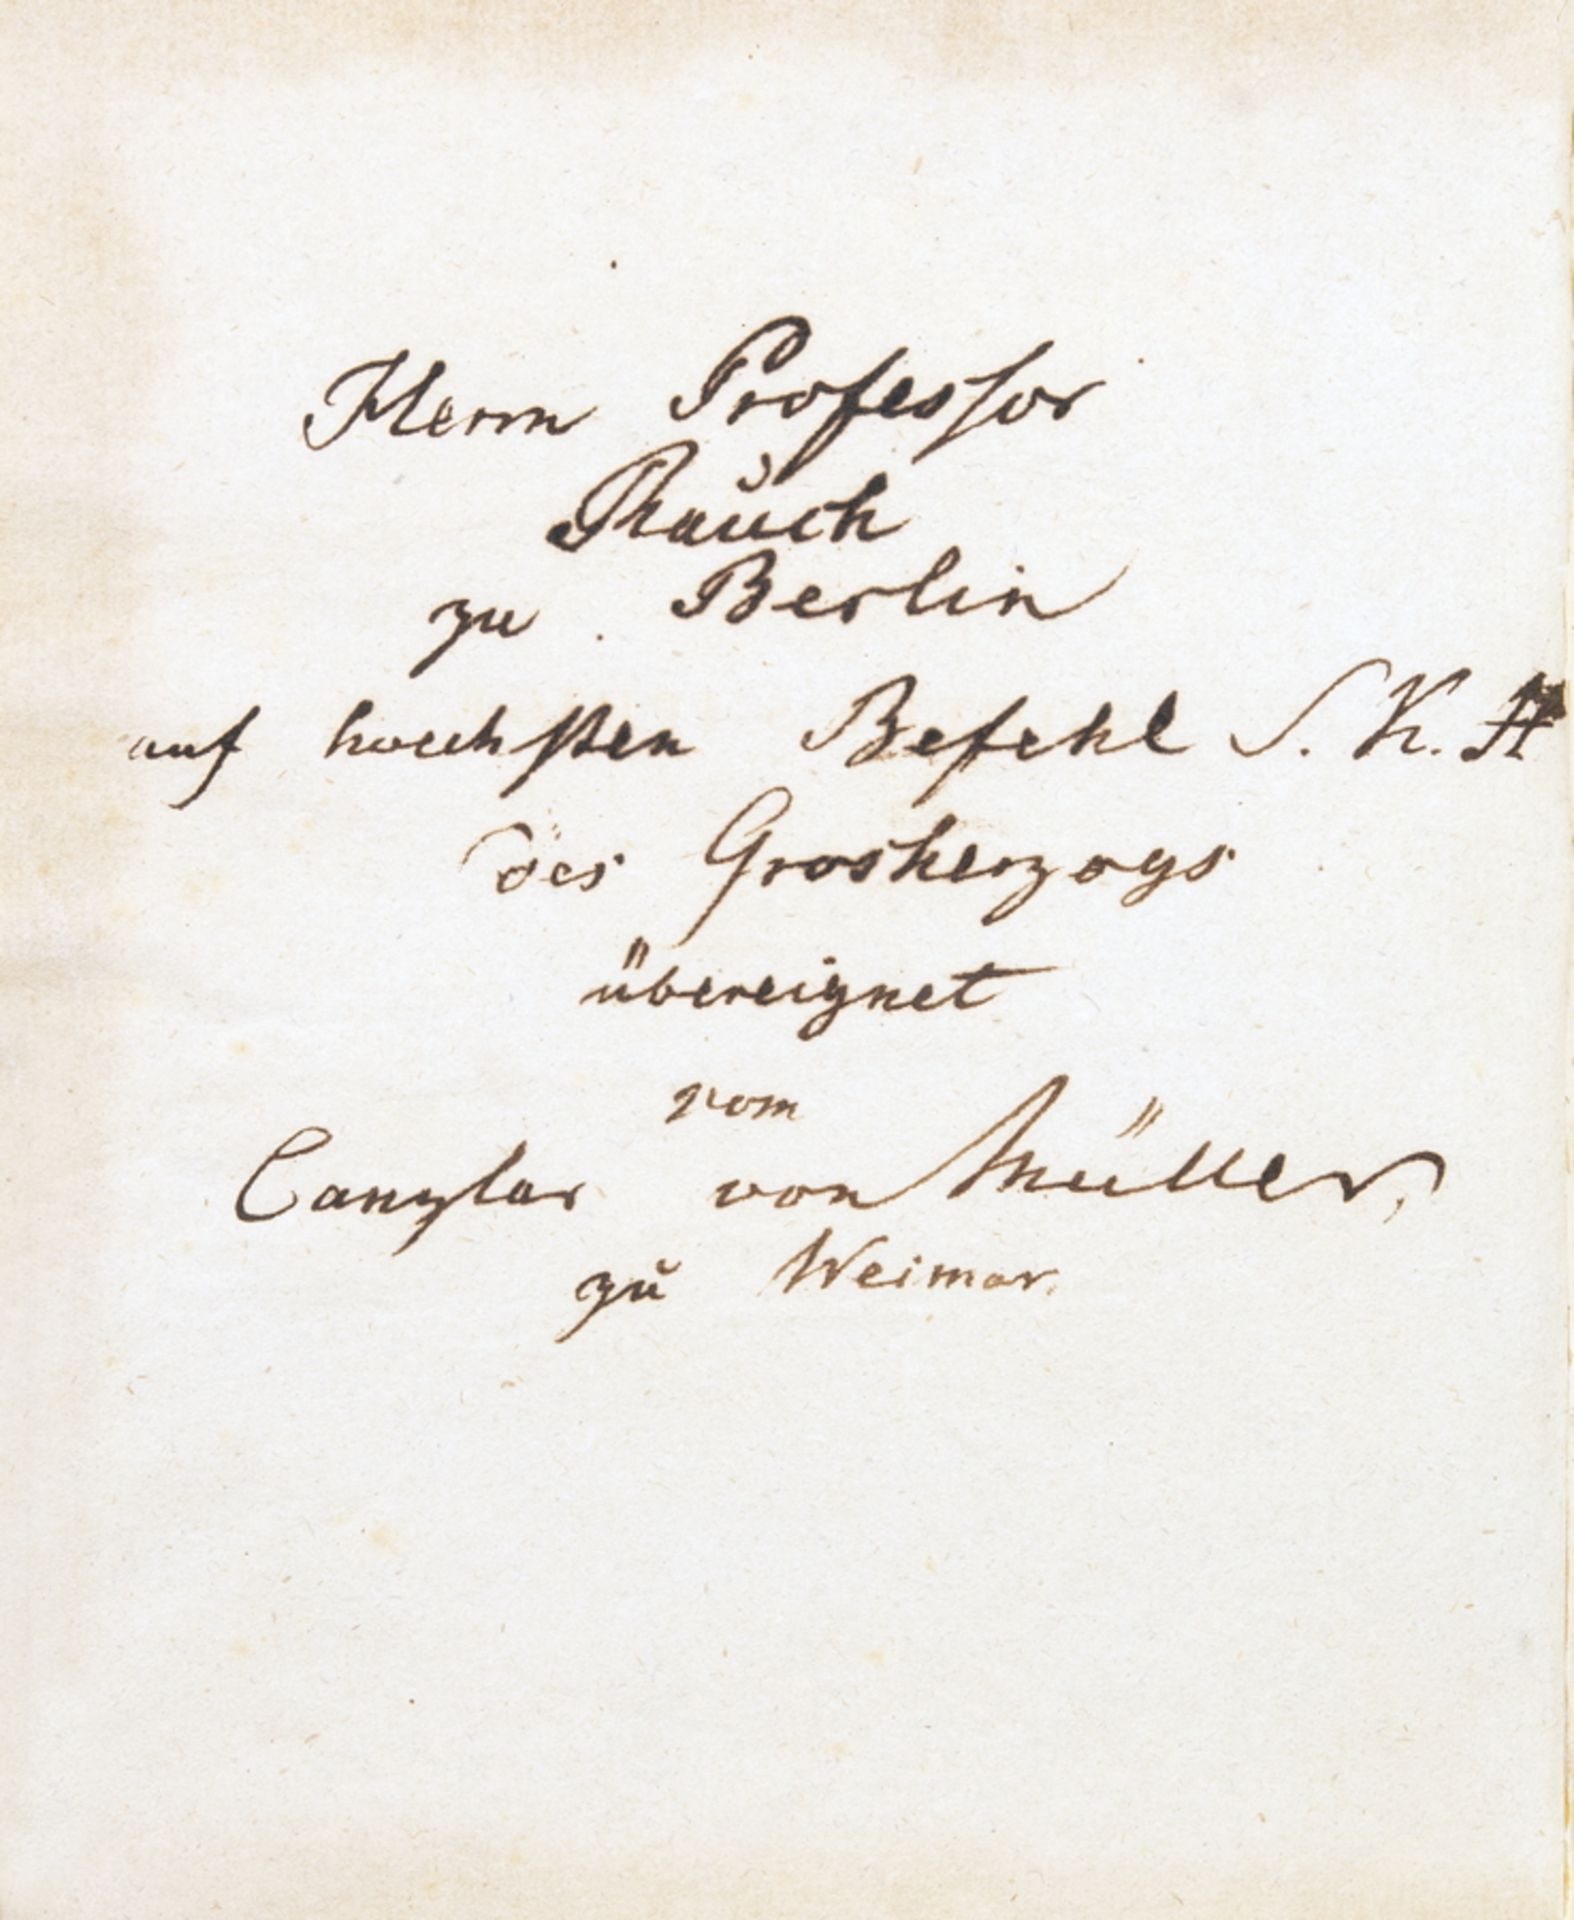 [Johann Wolfgang von Goethe]. Iphigenie. Abdruck zur Feier des VII. November MDCCCXXV. Jena, - Image 2 of 2